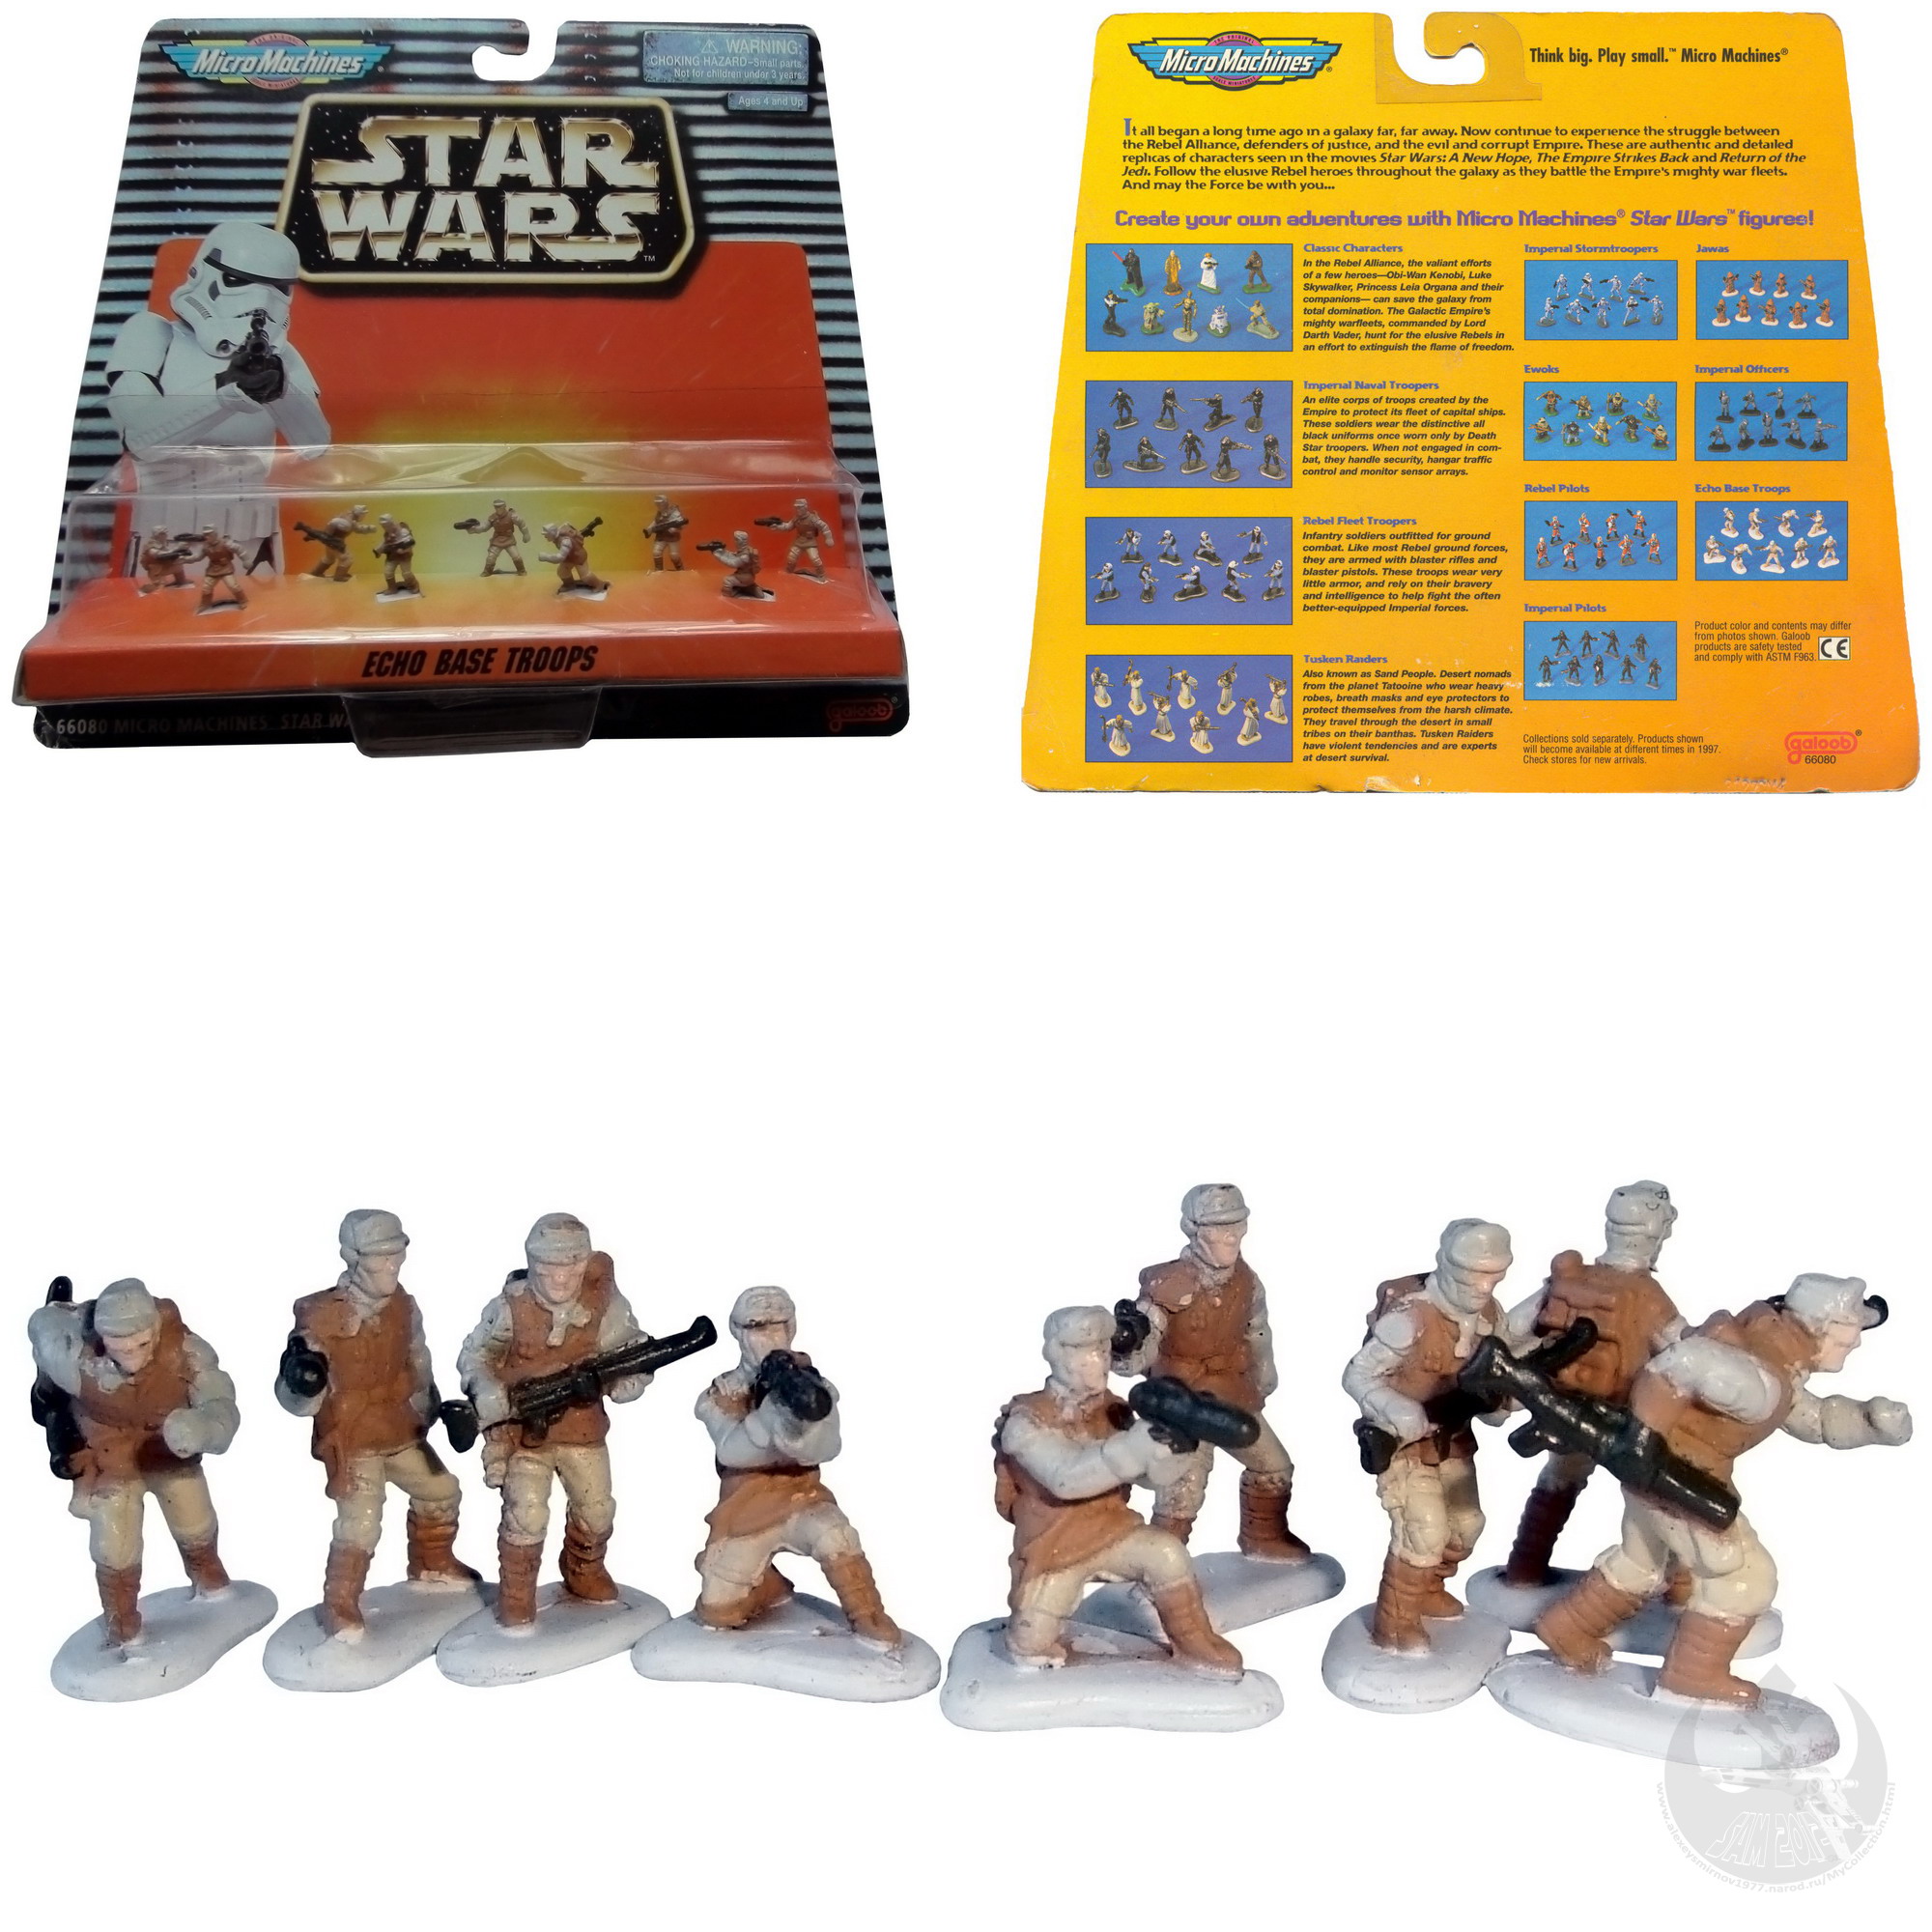 Galoob 1995 lose Star Wars MICROMACHINES Rebel Echo Base Troopers komplett 